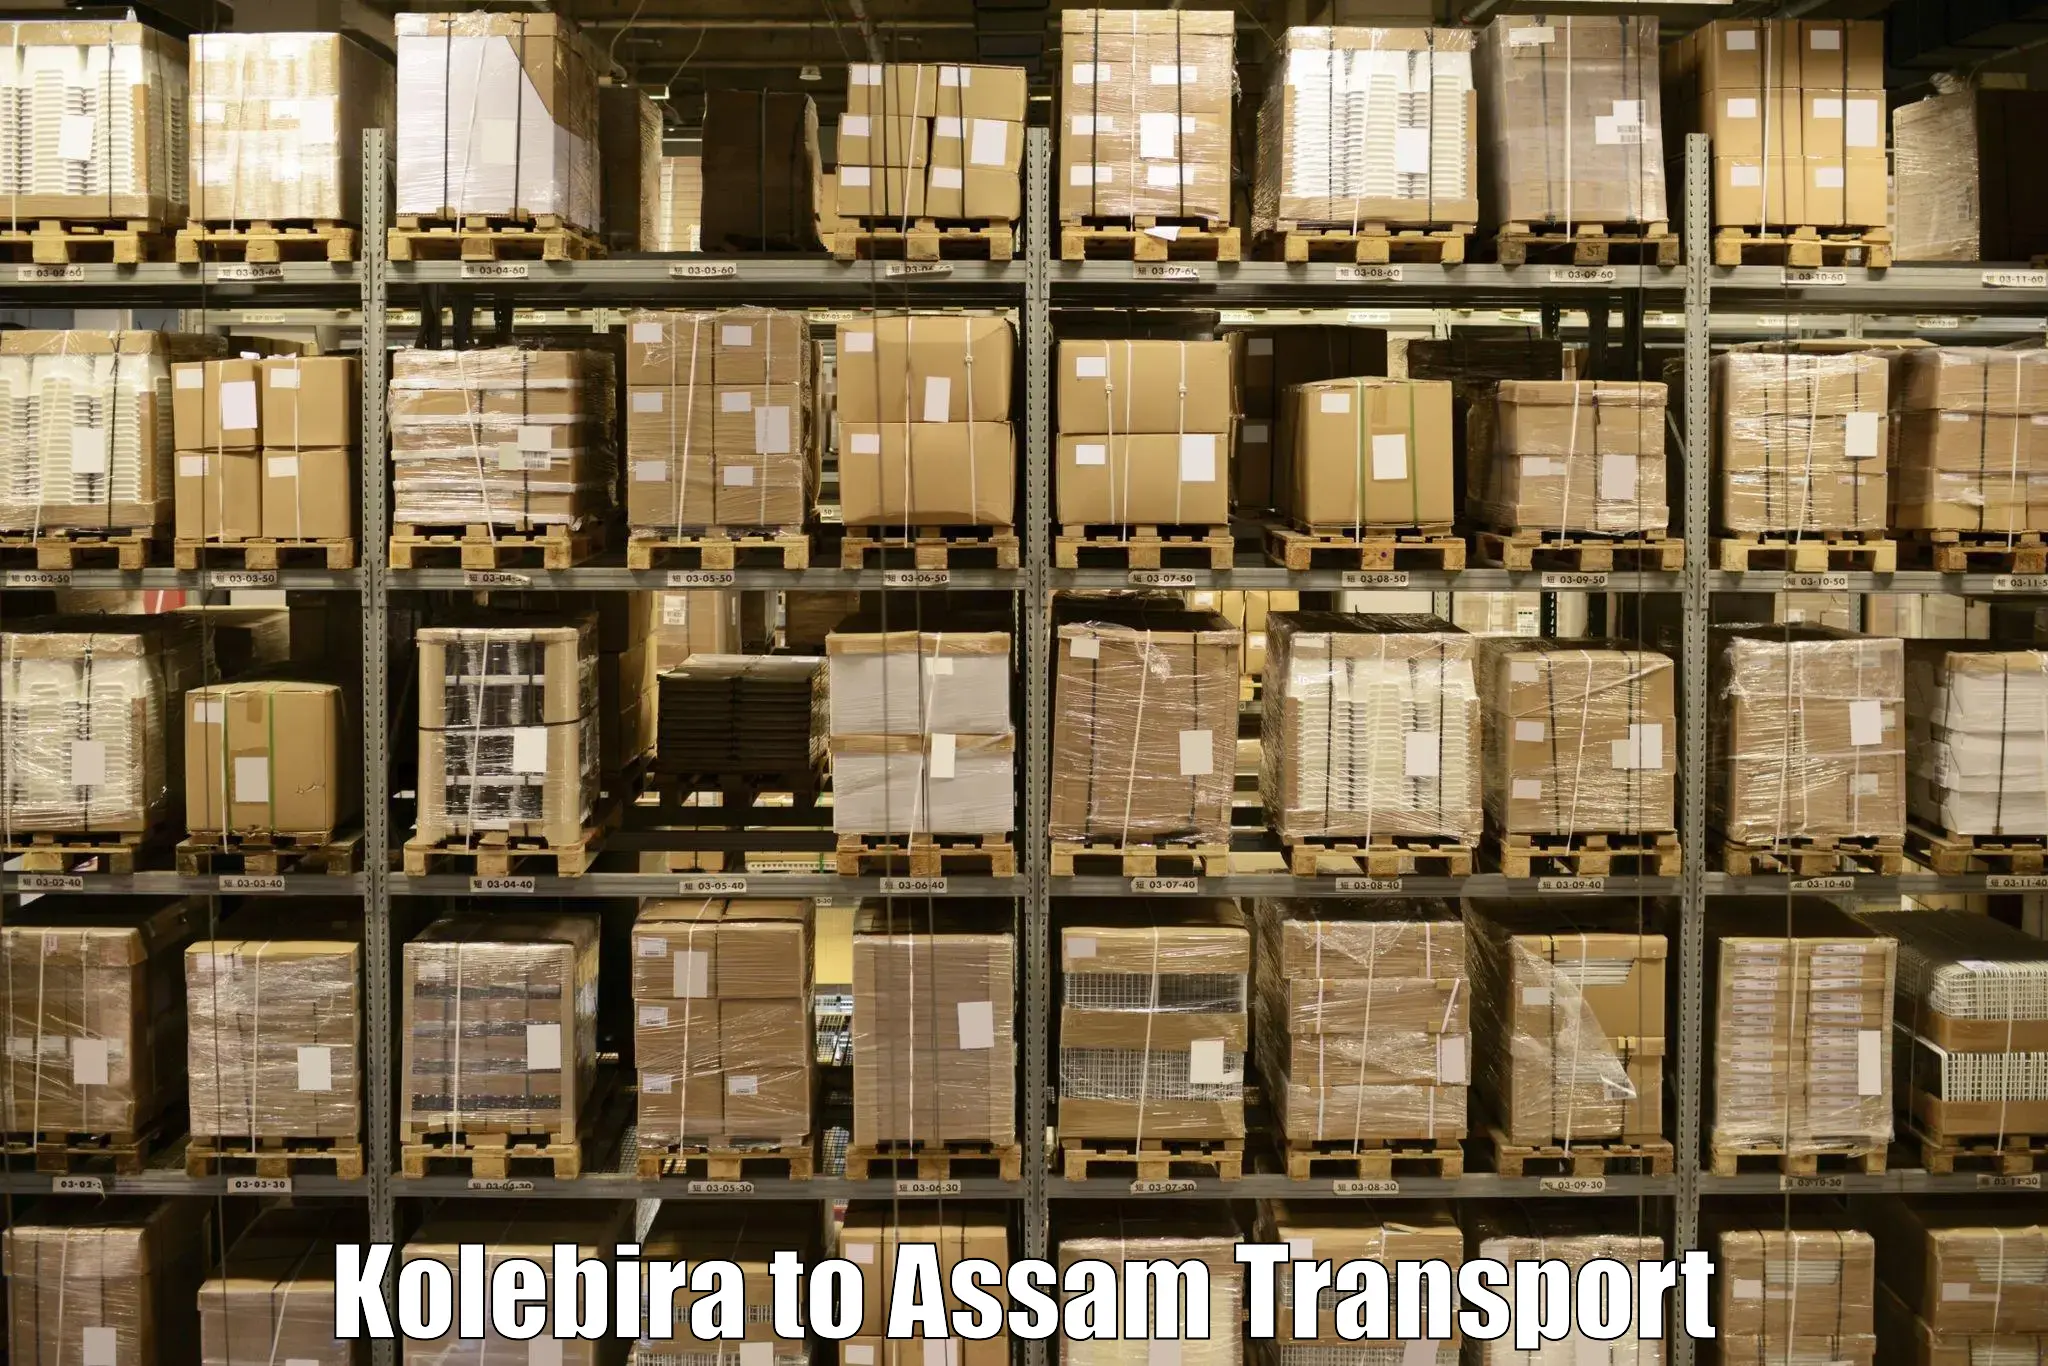 Daily parcel service transport Kolebira to Kaliabor